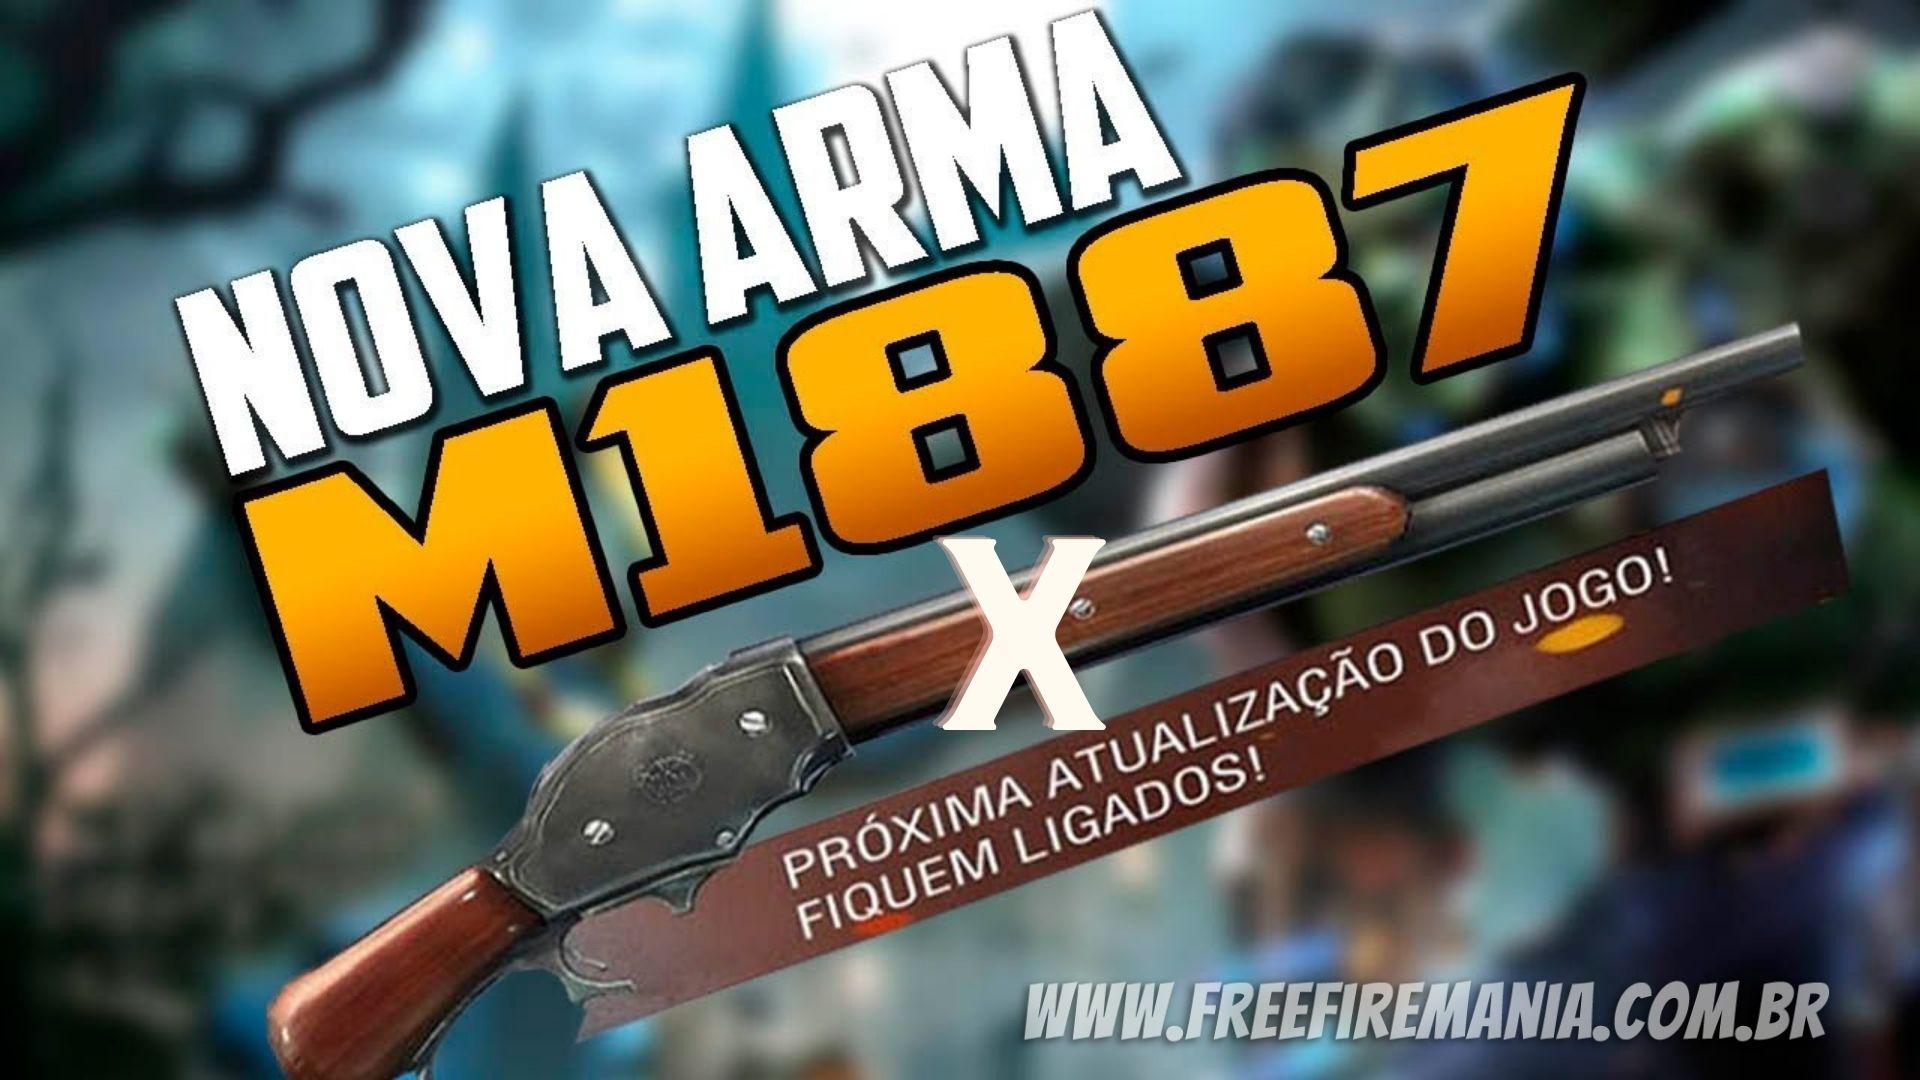  M1887-X Free Fire: "Doze Nova" ganha atributo e poderá ser utilizada com 3 munições